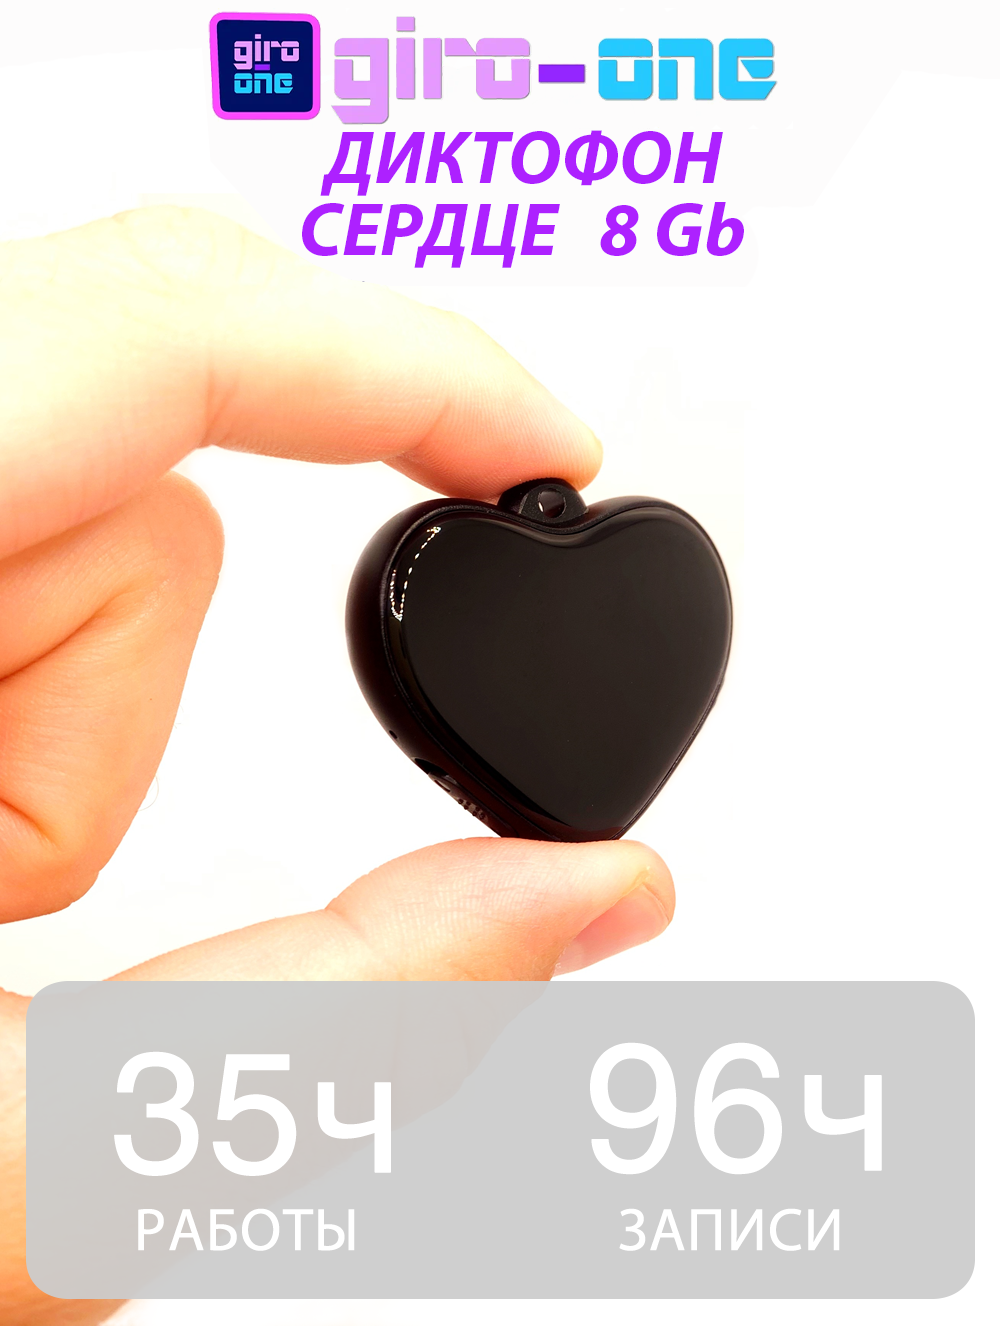 Диктофон подвеска в виде кулона - сердца с 8 гб встроенной памяти